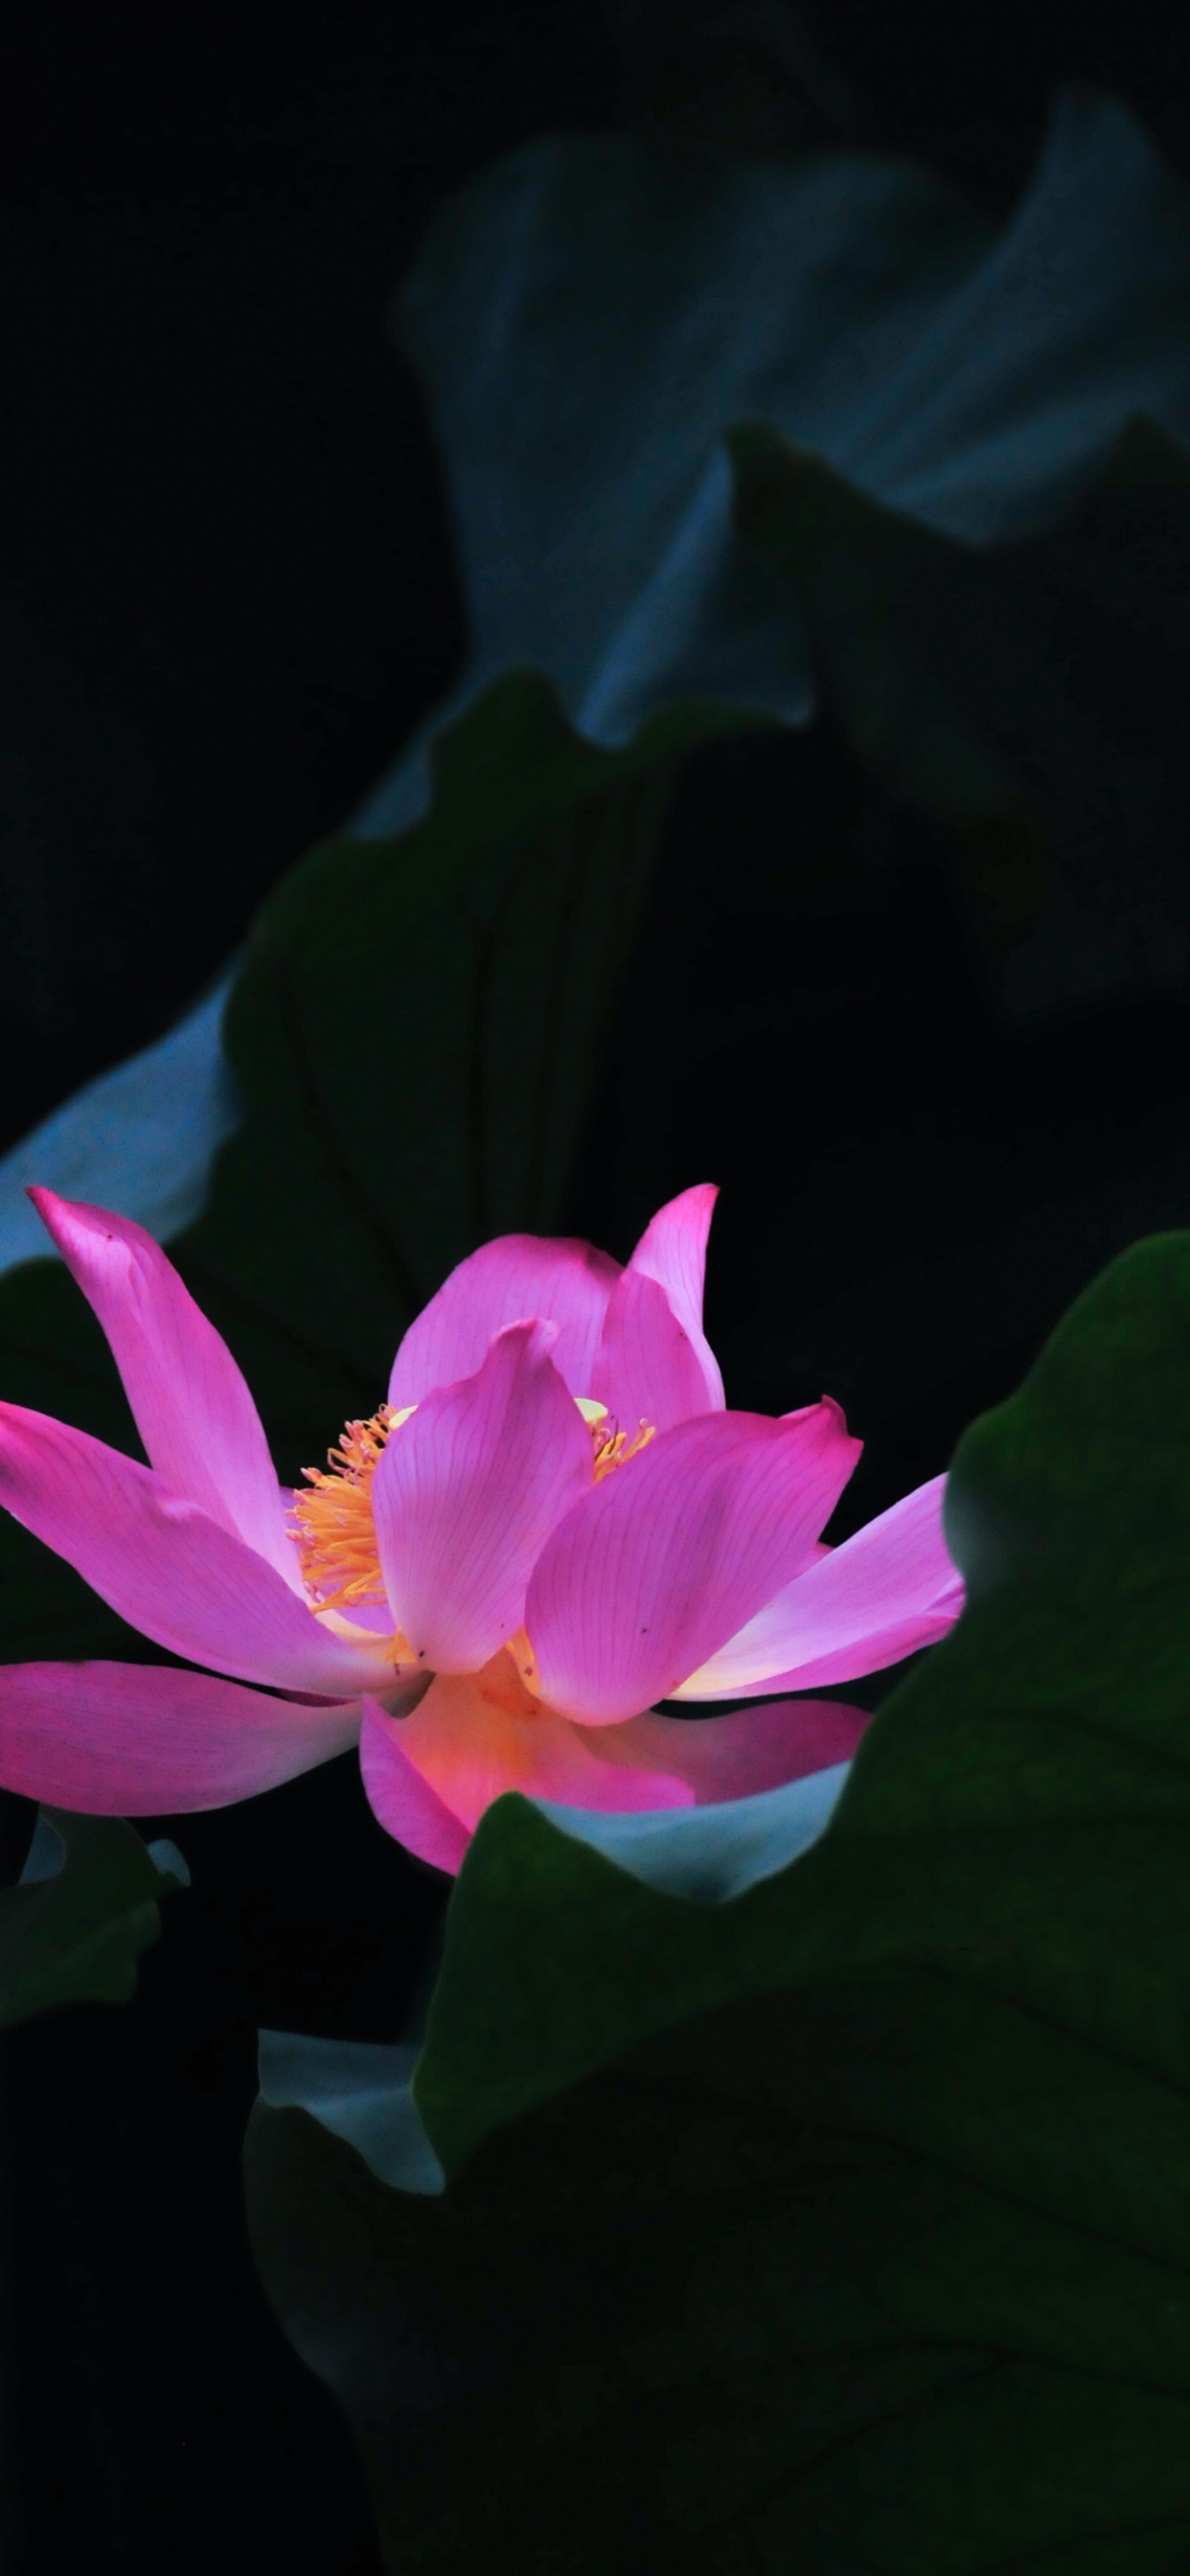 Pink Lotus Flower in Bloom. Wallpaper in 1242x2688 Resolution